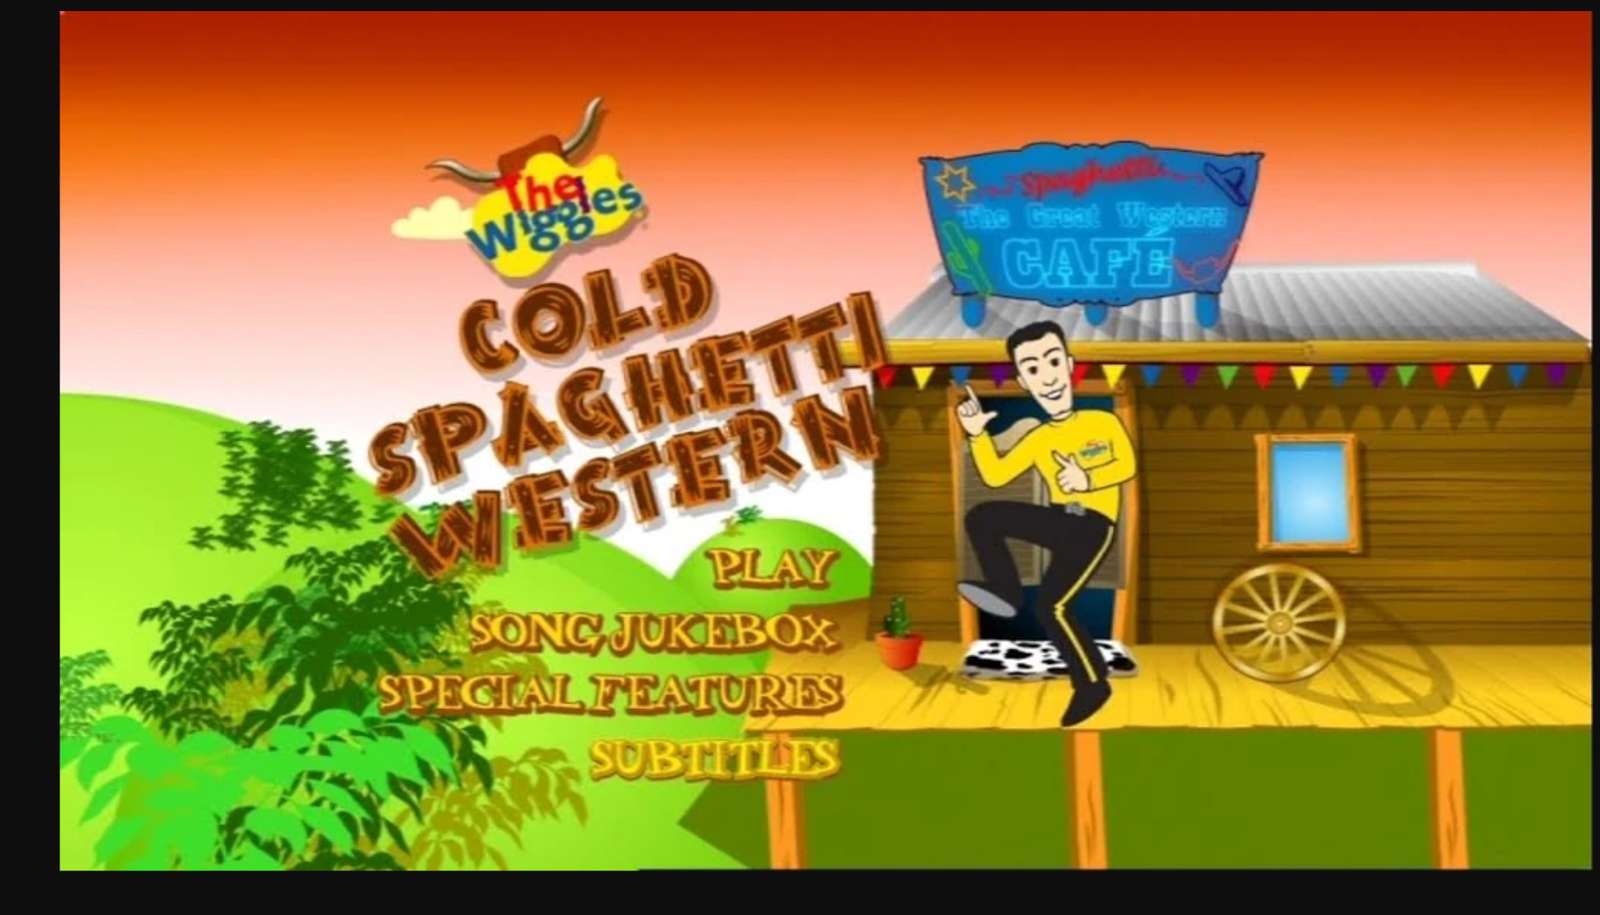 Cold Spaghetti Western DVD Menu Wiggles 2004 онлайн пазл